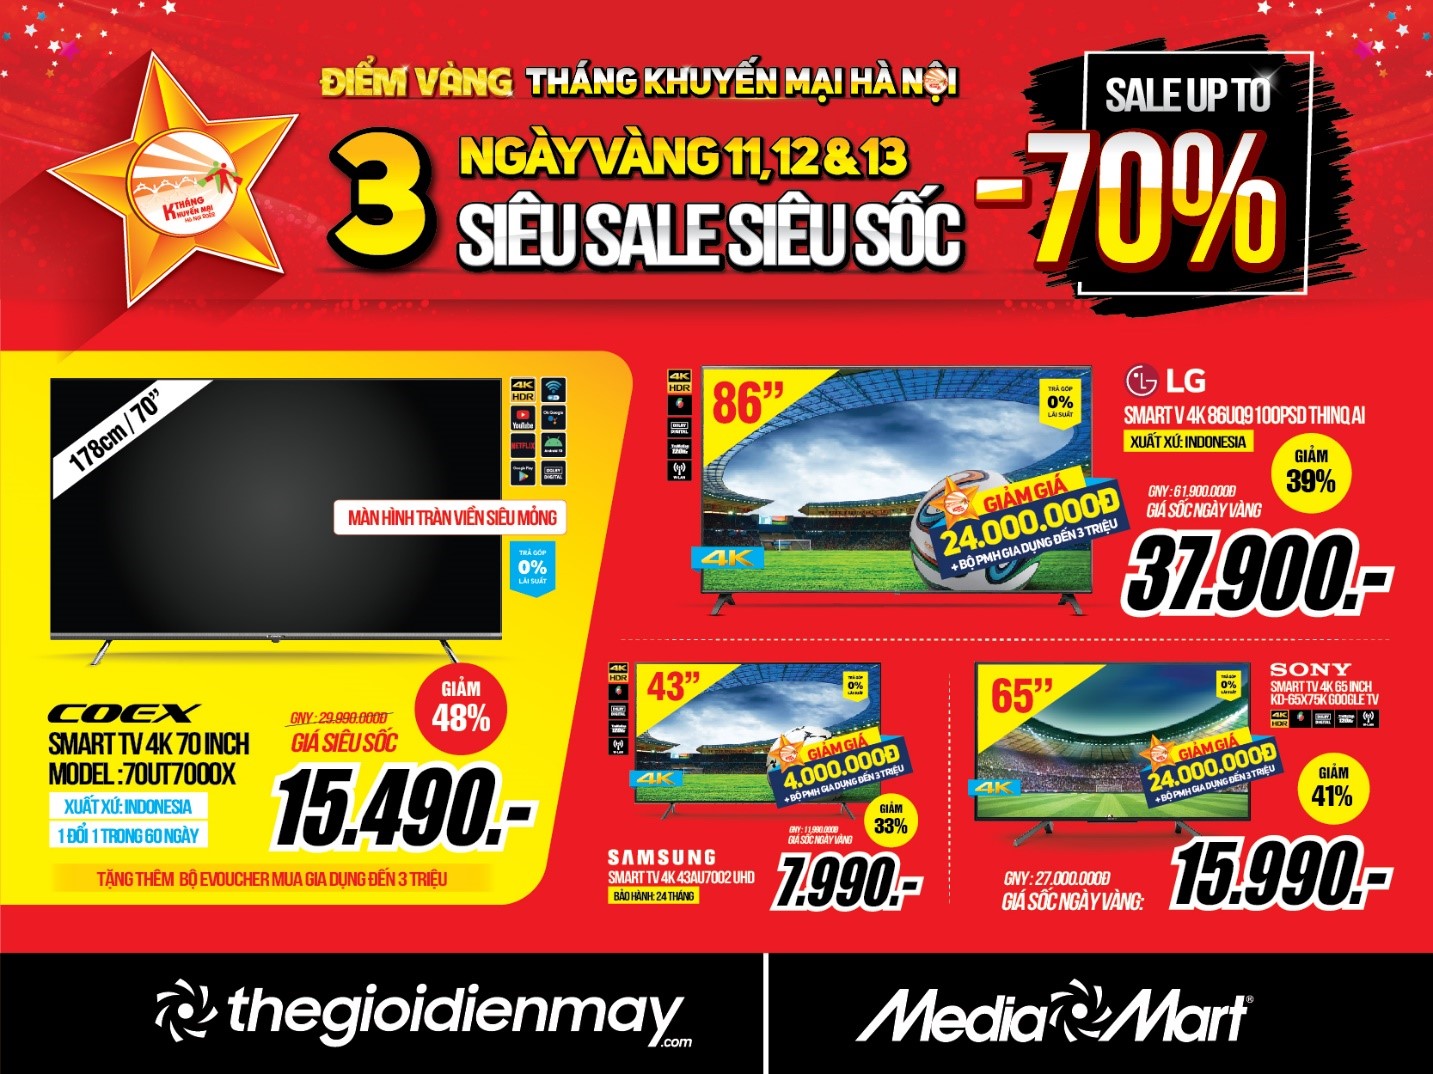 mediamart 3 days sales 2